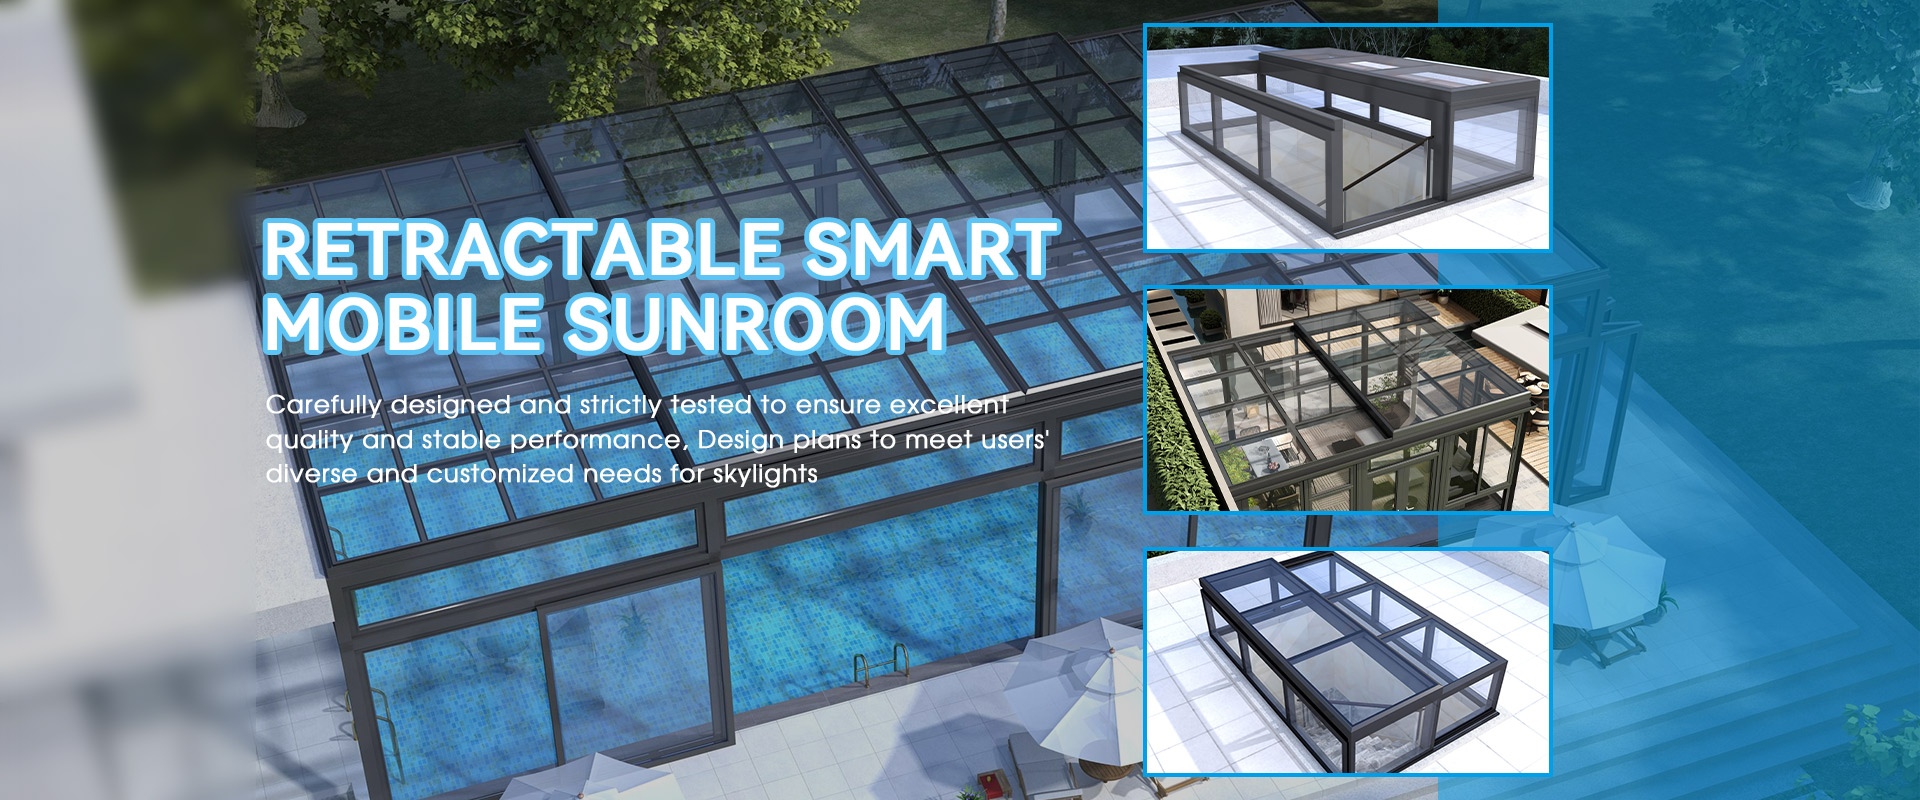 Retractable Smart Mobile Sunroom Supplier